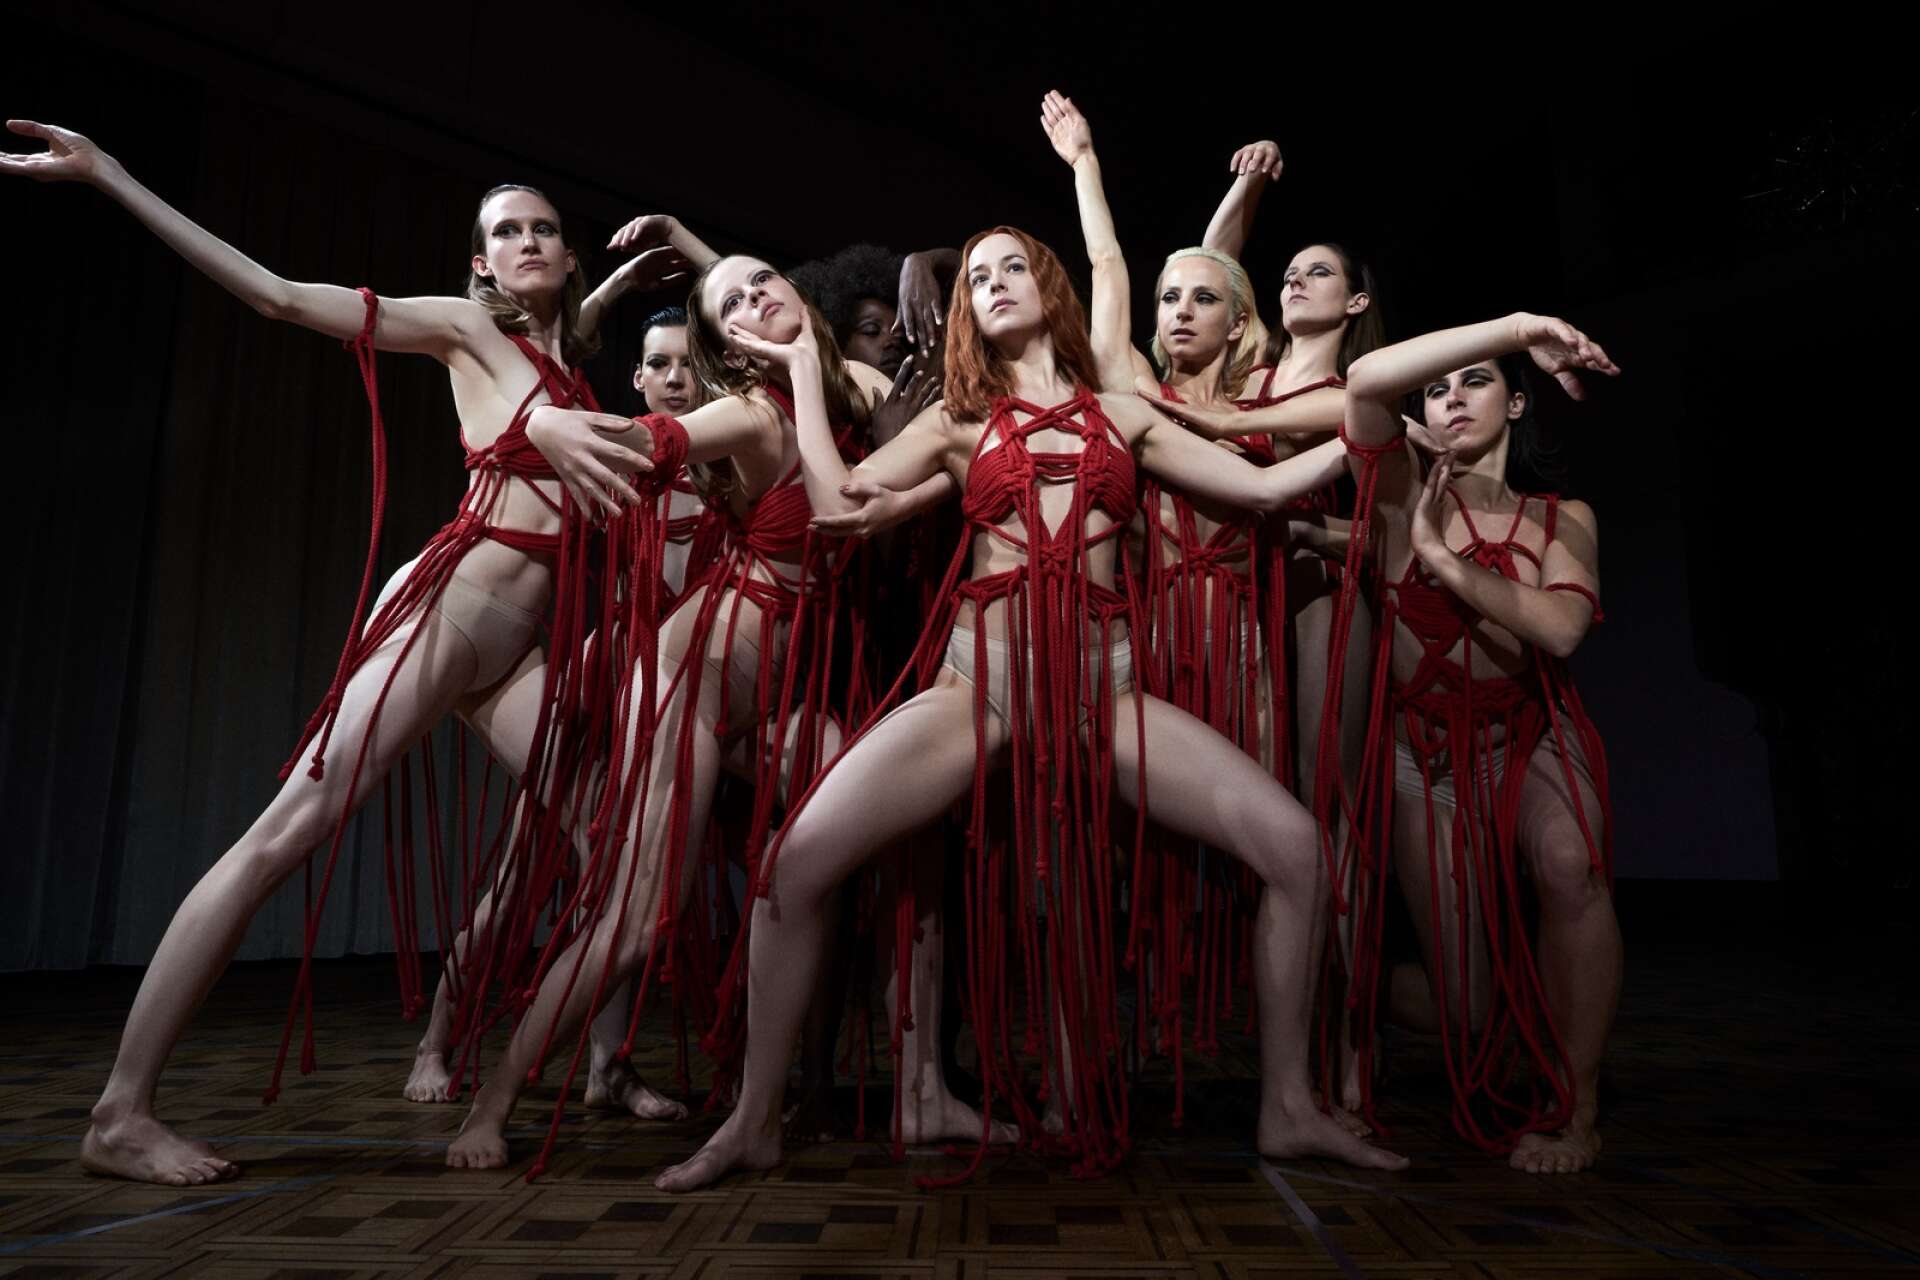 Skräckfilmen Suspiria utspelar sig på en prestigefull balettskola i Berlin. 